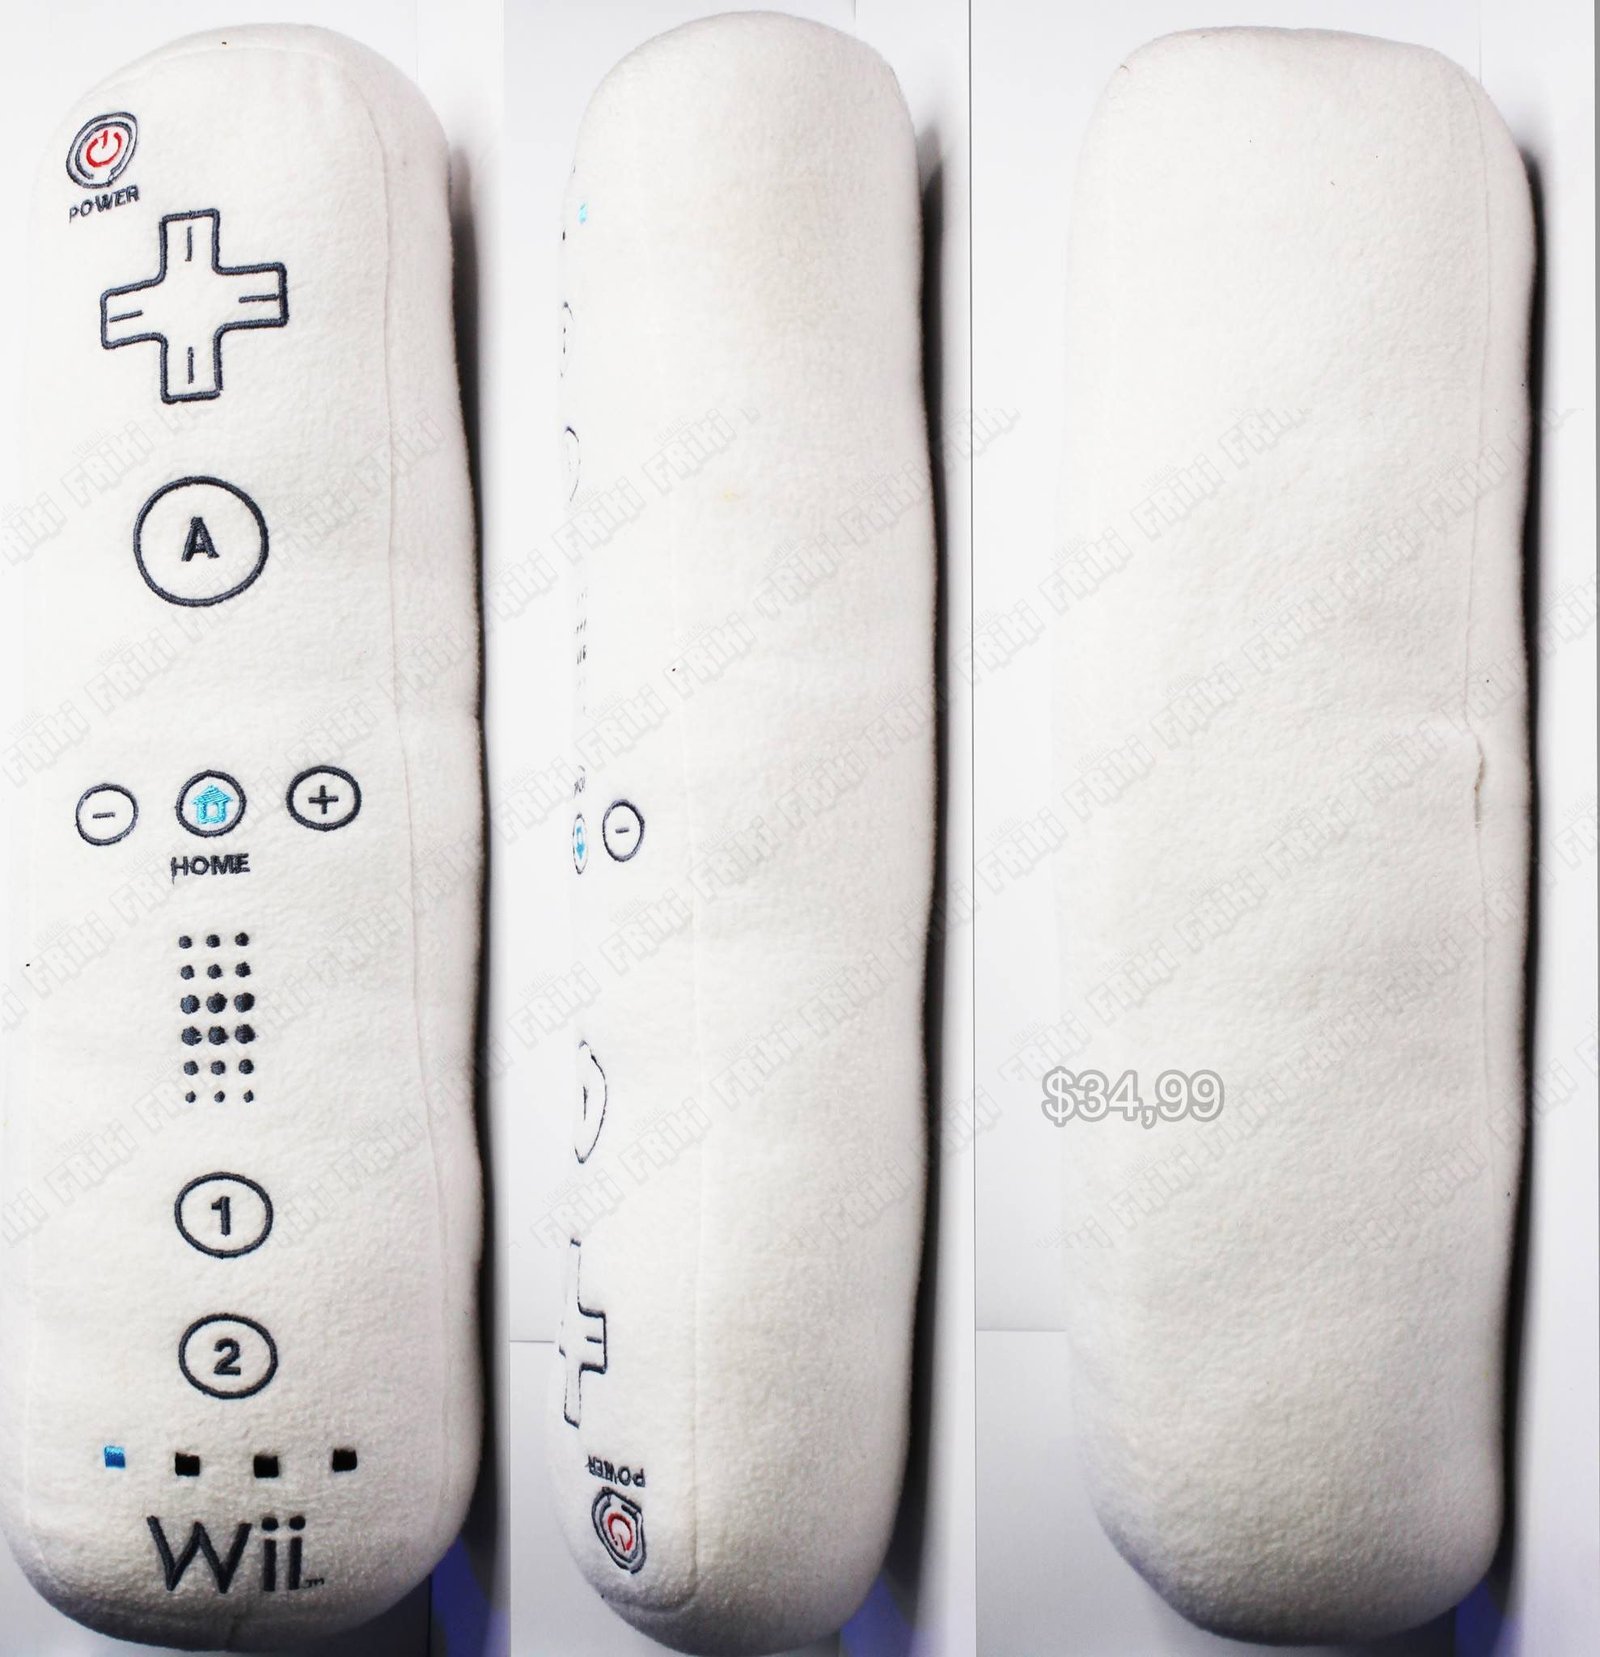 Peluche Videojuegos Consola Wii Mando Ecuador Comprar Venden, Bonita Apariencia de mando de wii, practica, Hermoso material de poliéster Color blanco Estado nuevo